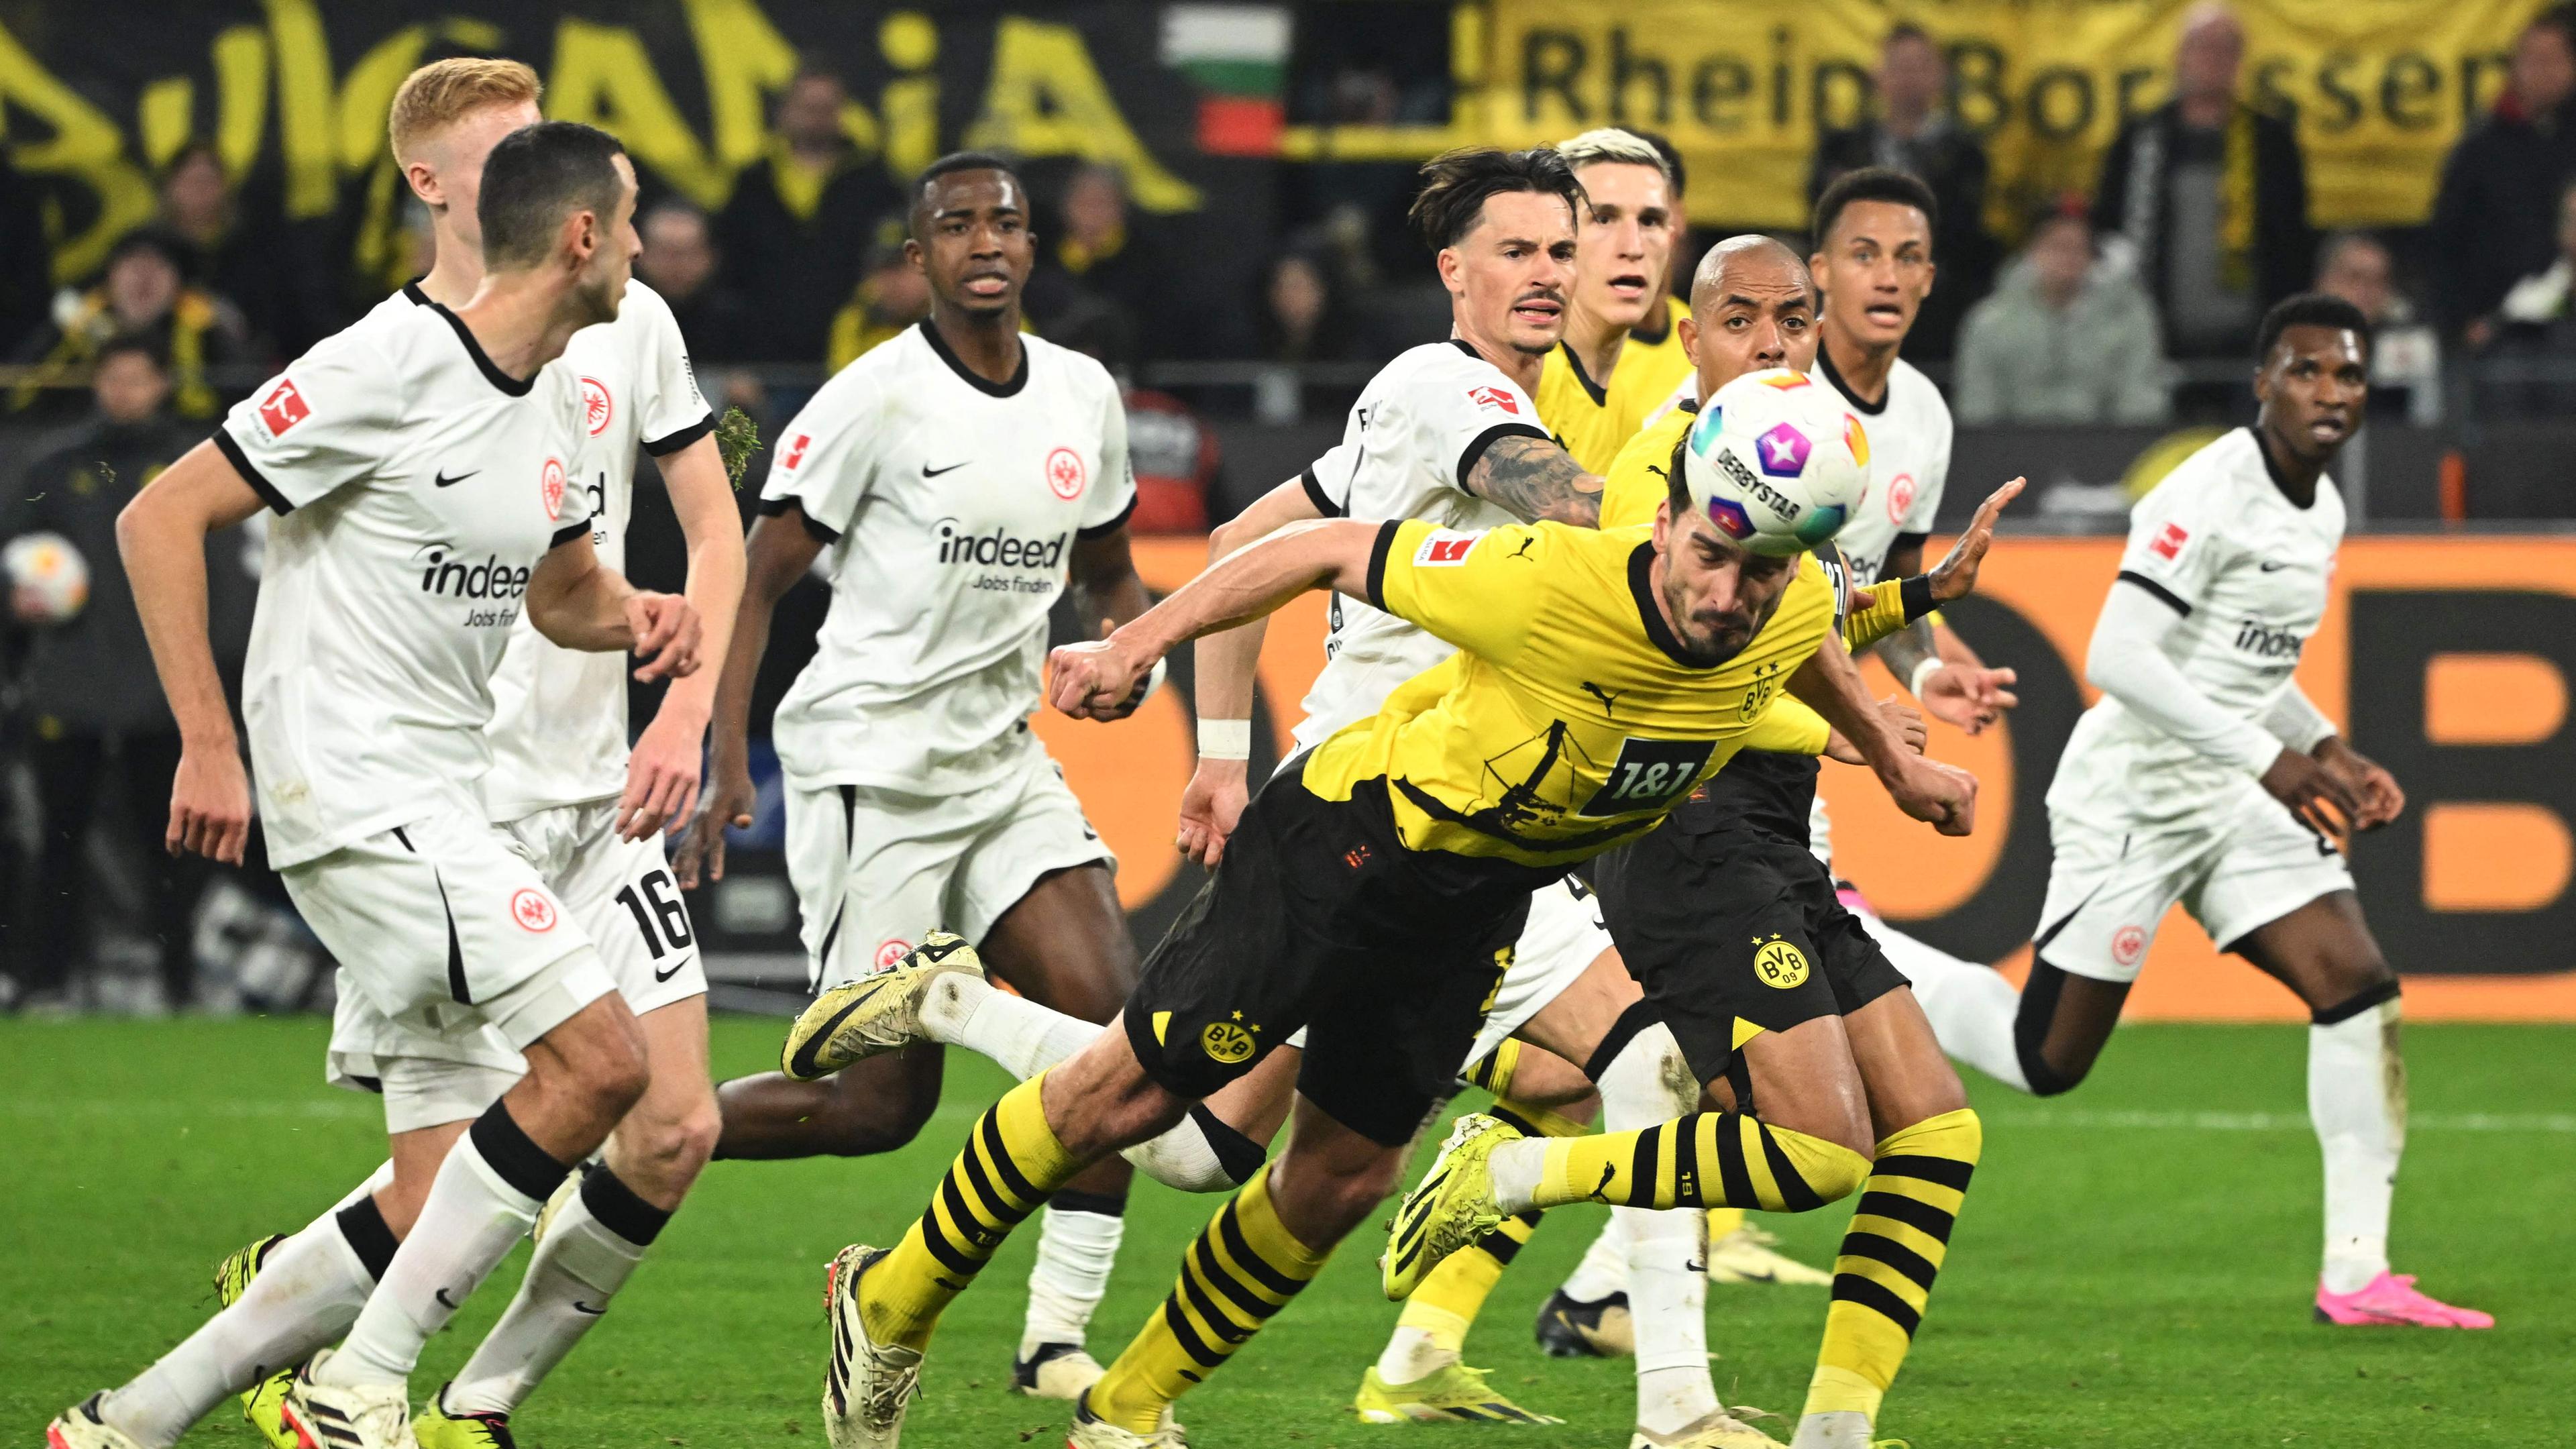 Mats Hummels (Borussia Dortmund) köpft den Ball ins Tor und erzielt das 2:1 gegen Eintracht Frankfurt.